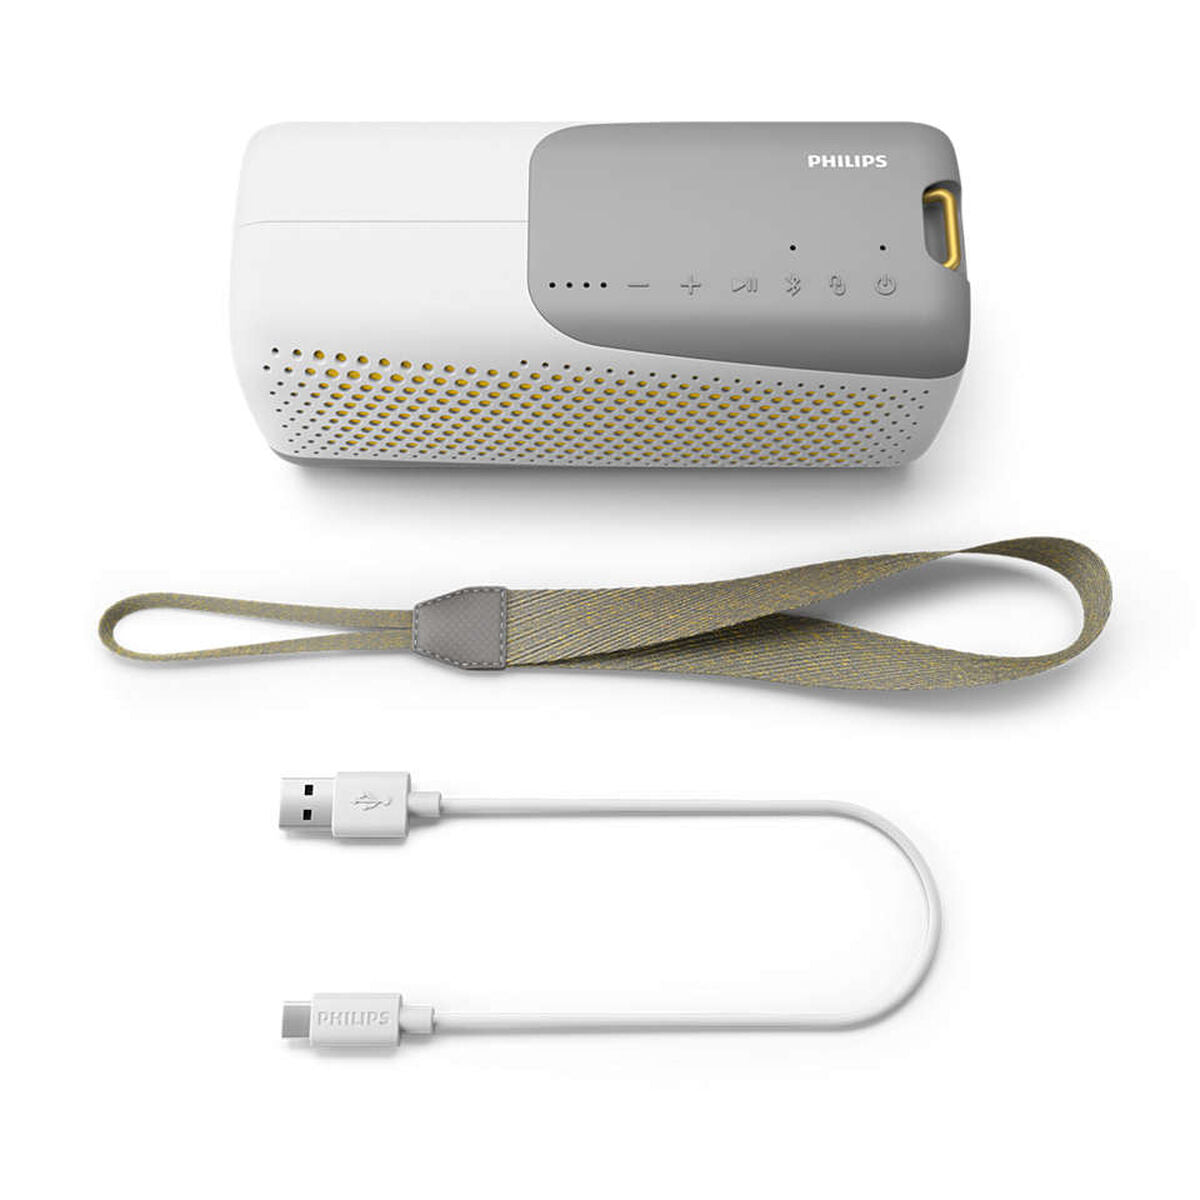 Tragbare Bluetooth-Lautsprecher Philips Wireless speaker Weiß